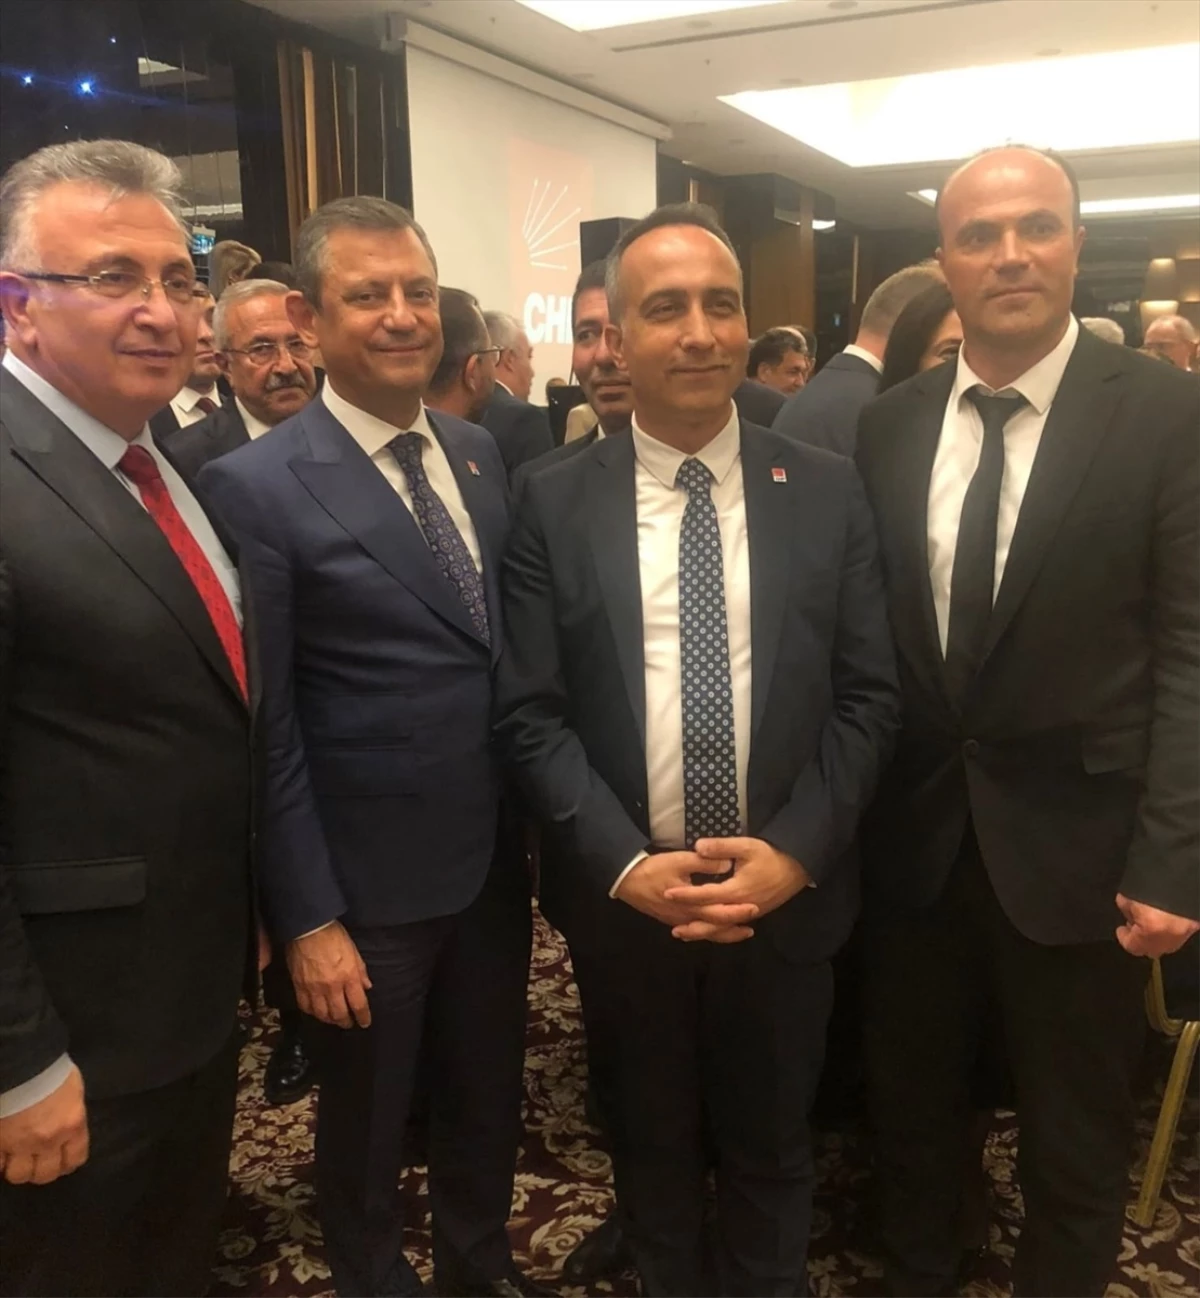 CHP Çorum İl Başkanı Dinçer Solmaz ve belediye başkanlarından oluşan heyet, CHP Genel Başkanı Özgür Özel ile görüştü